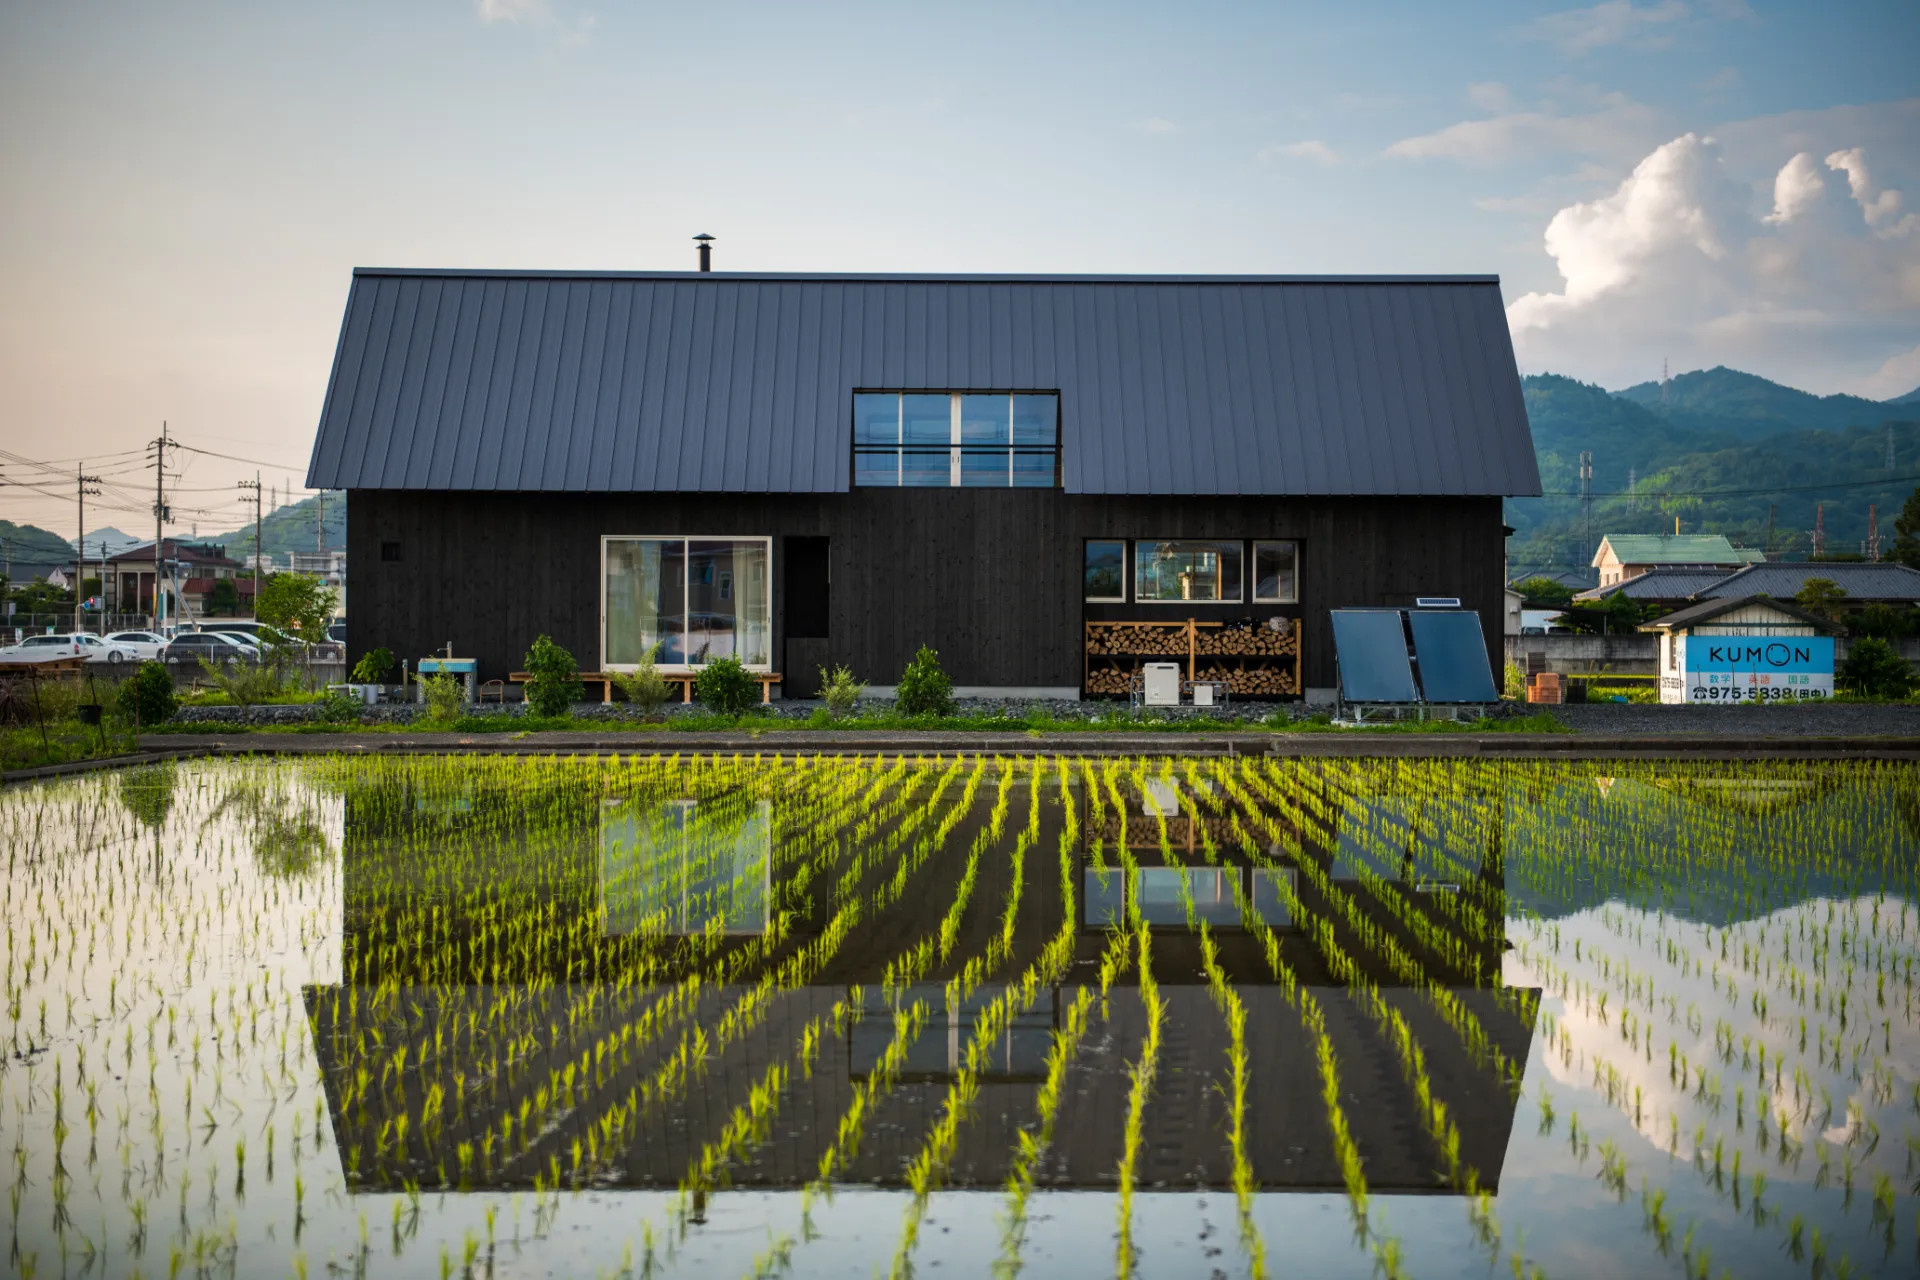 מגזין מקו ועד תרבות / מיזם דיגיטלי ללא צרכי רווח Takeshi Ikeuchi<br><br>בית משפחה של חוואי יפני<br>Farm House of Wind and Fire<br><br>להעריך פשטות, חיבור טבעי לטבע<br>ועיצוב שרק בתרבות היפנית אפשרי.  